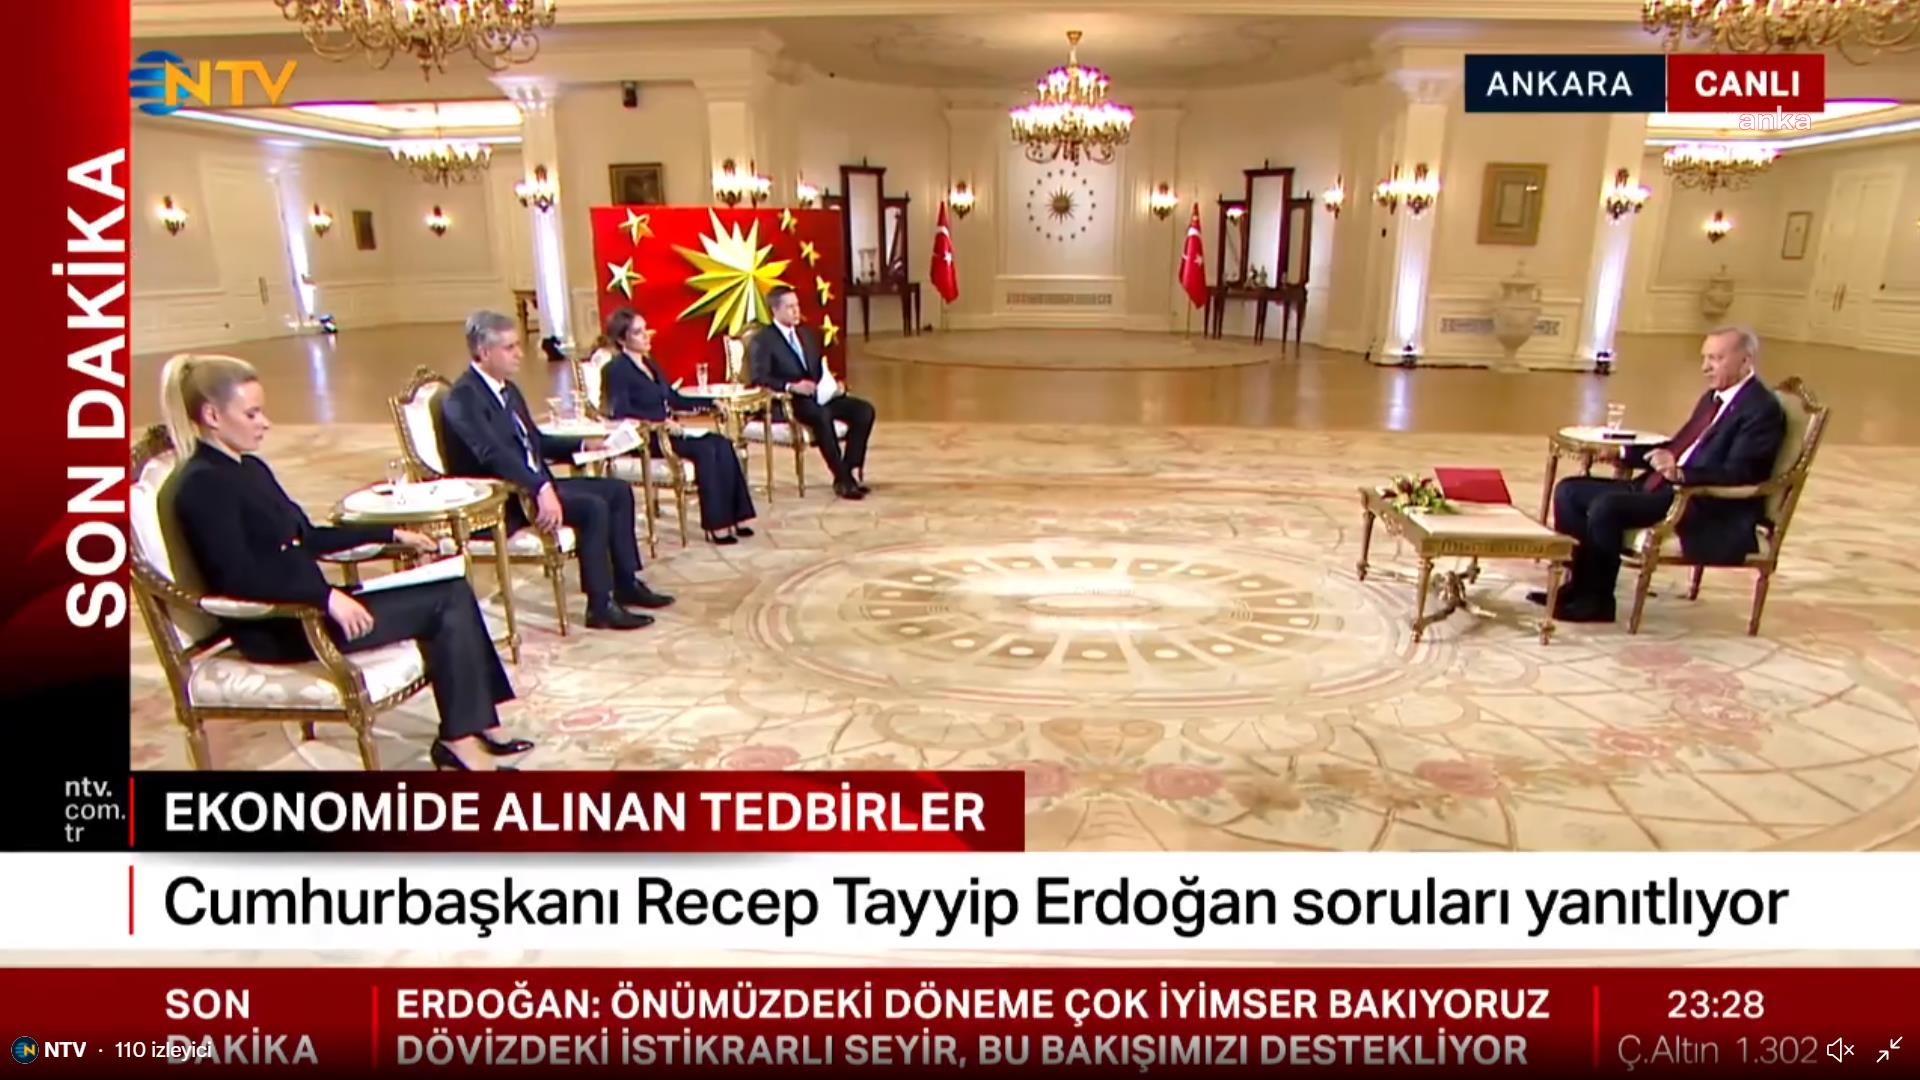 Kılıçdaroğlu'ndan NTV'ye Erdoğan çağrısı: "Siz sormaya çekindiniz, bağlayın, ben sorayım ıslak imzalı milyarları"